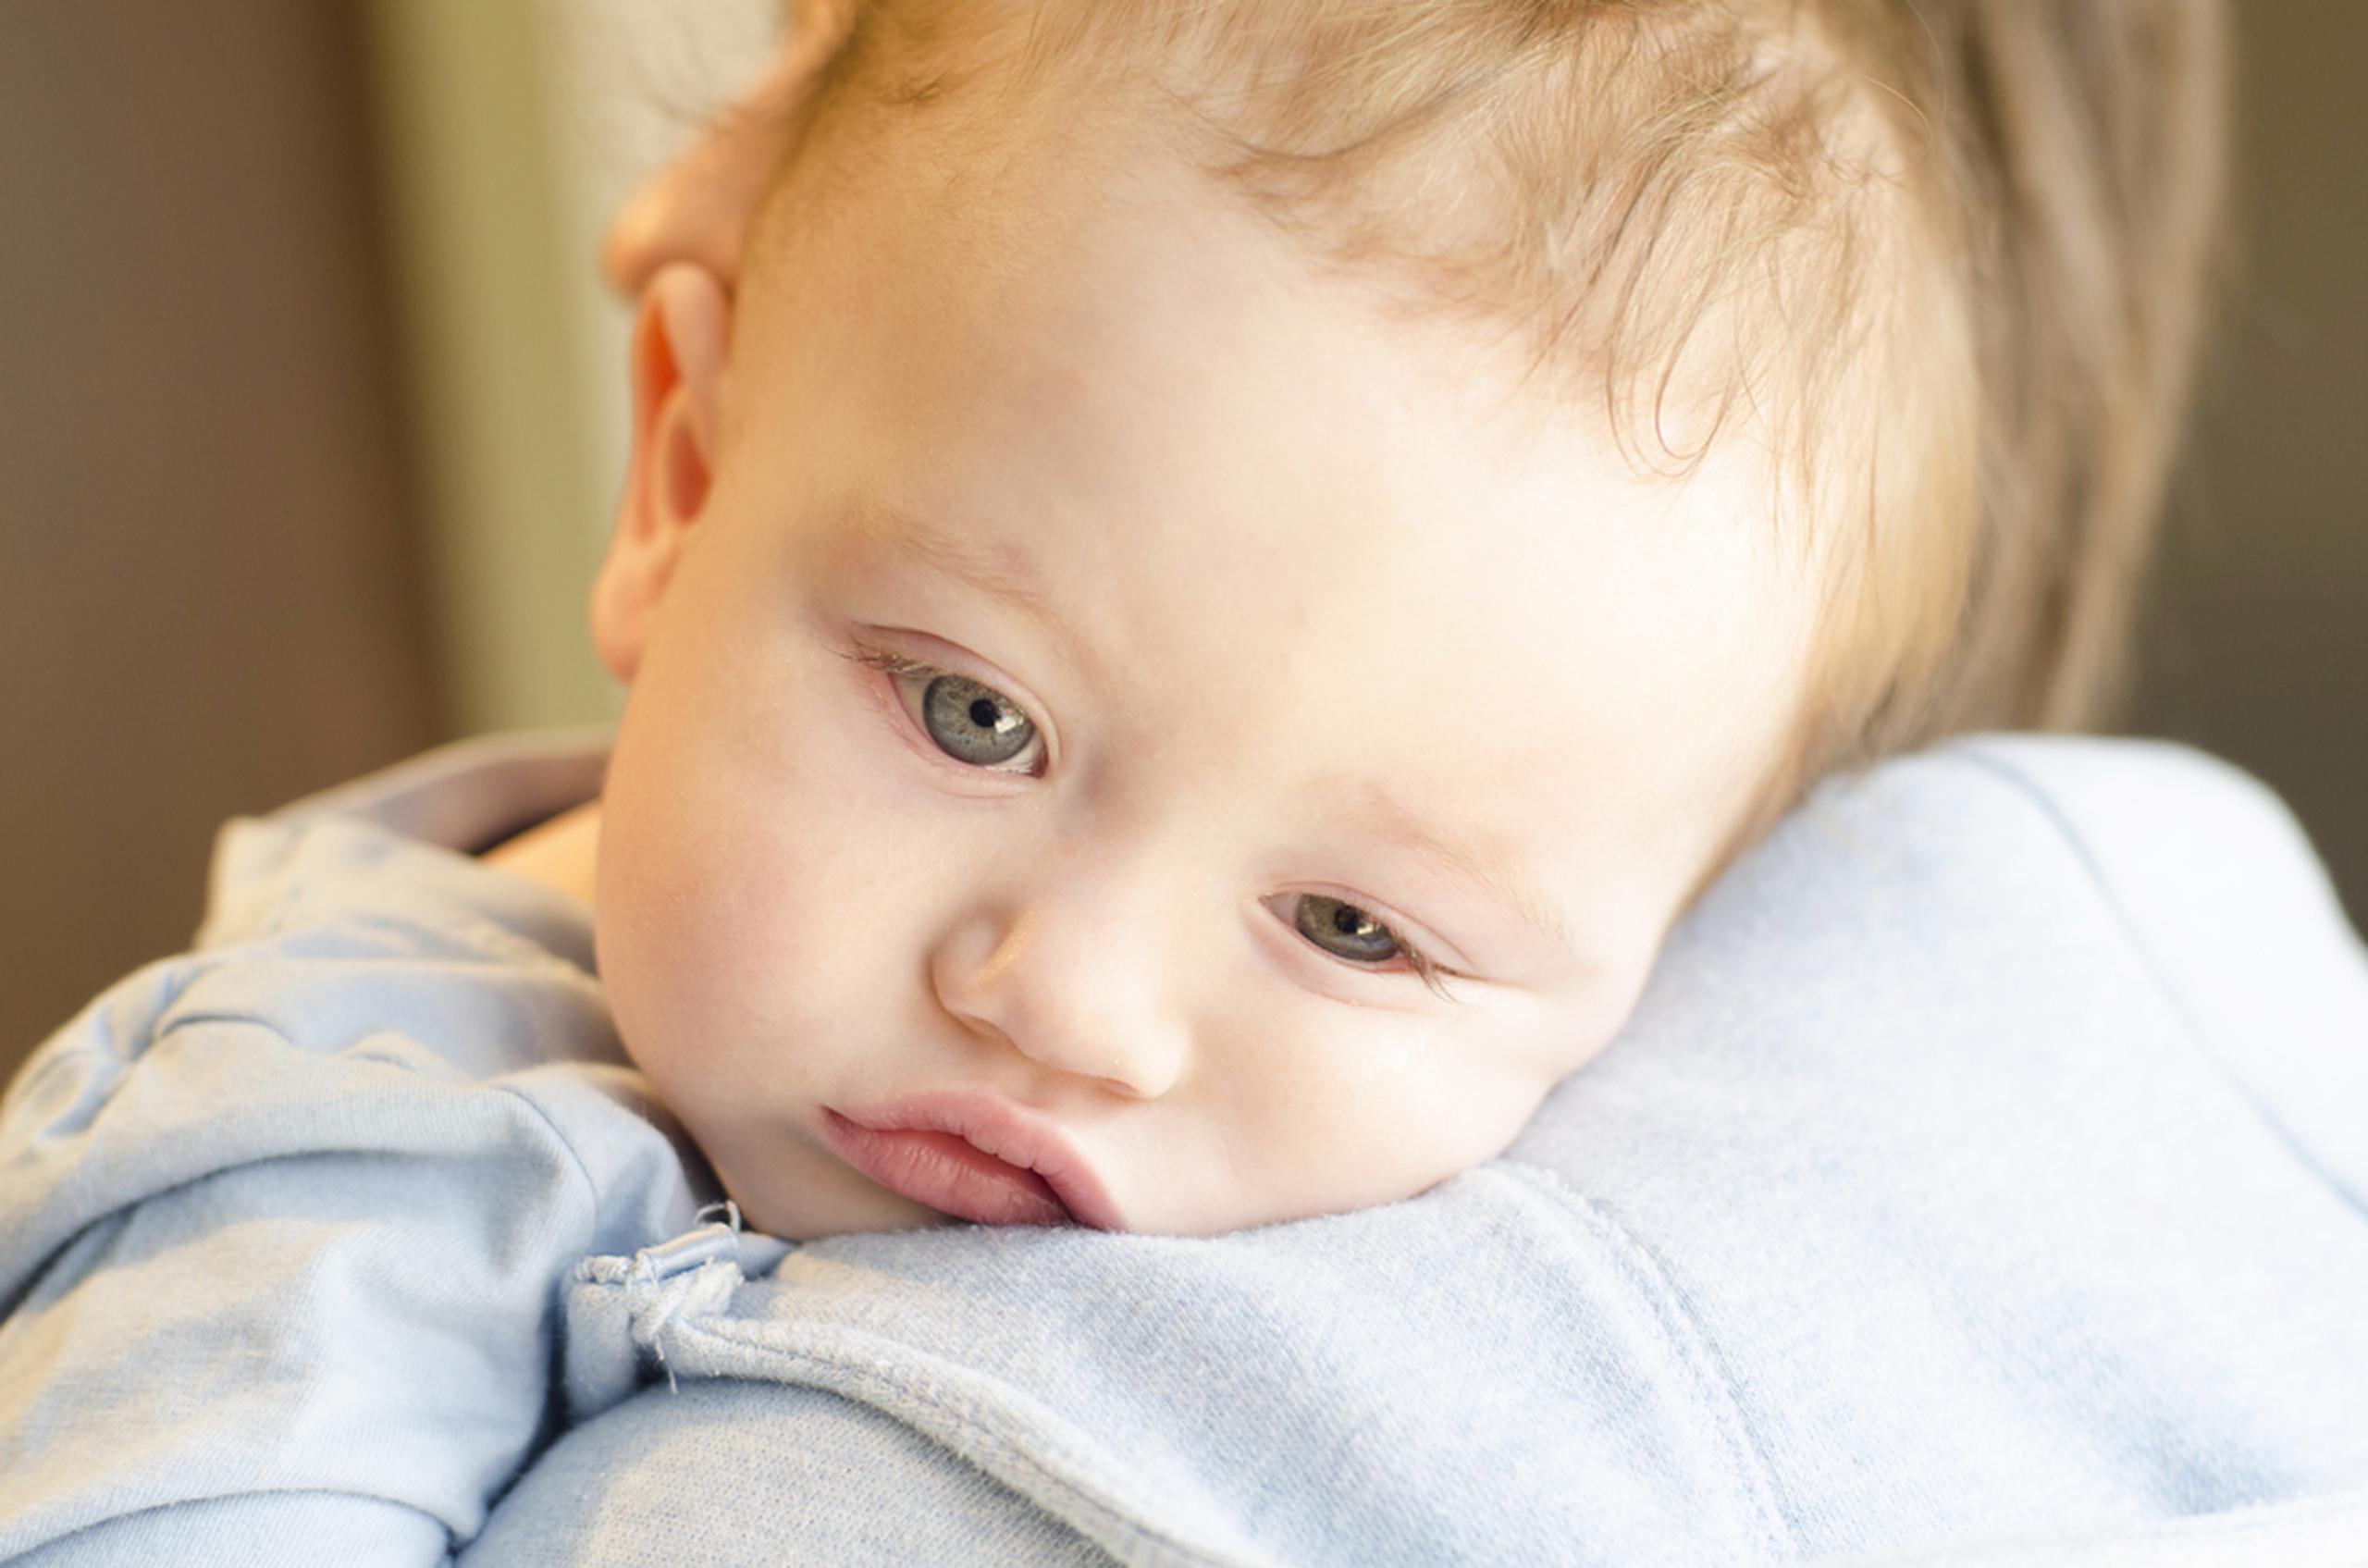 En los bebés muy pequeños con el virus respiratorio sincitial, los únicos síntomas pueden ser irritabilidad, menor actividad y dificultad para respirar. Sigue las recoomendaciones: